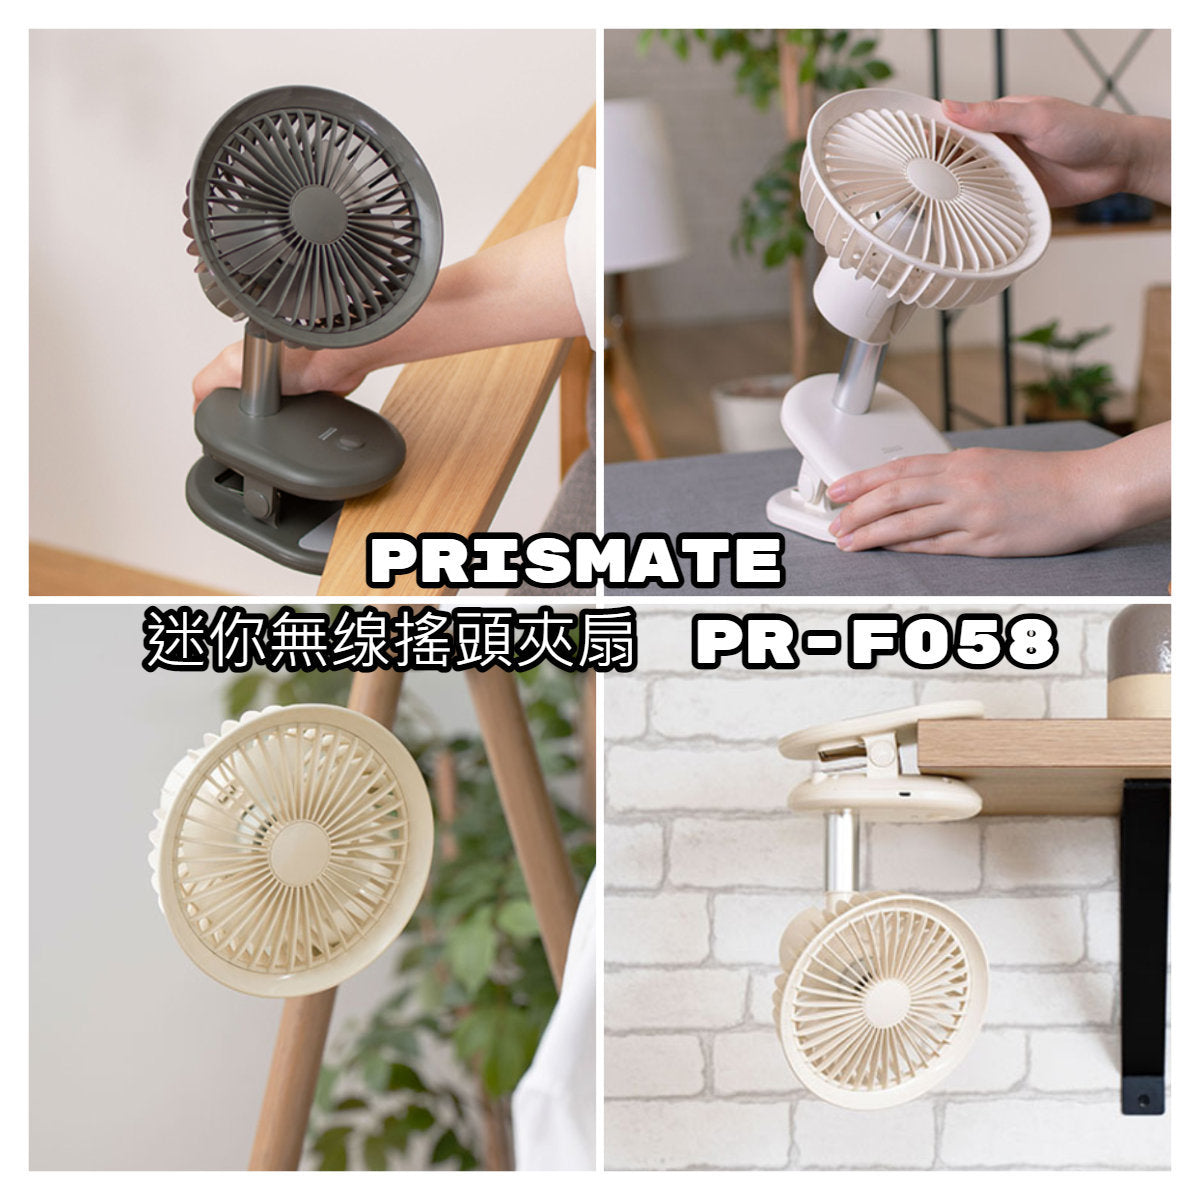 Prismate - Mini wireless oscillating clip fan PR-F058